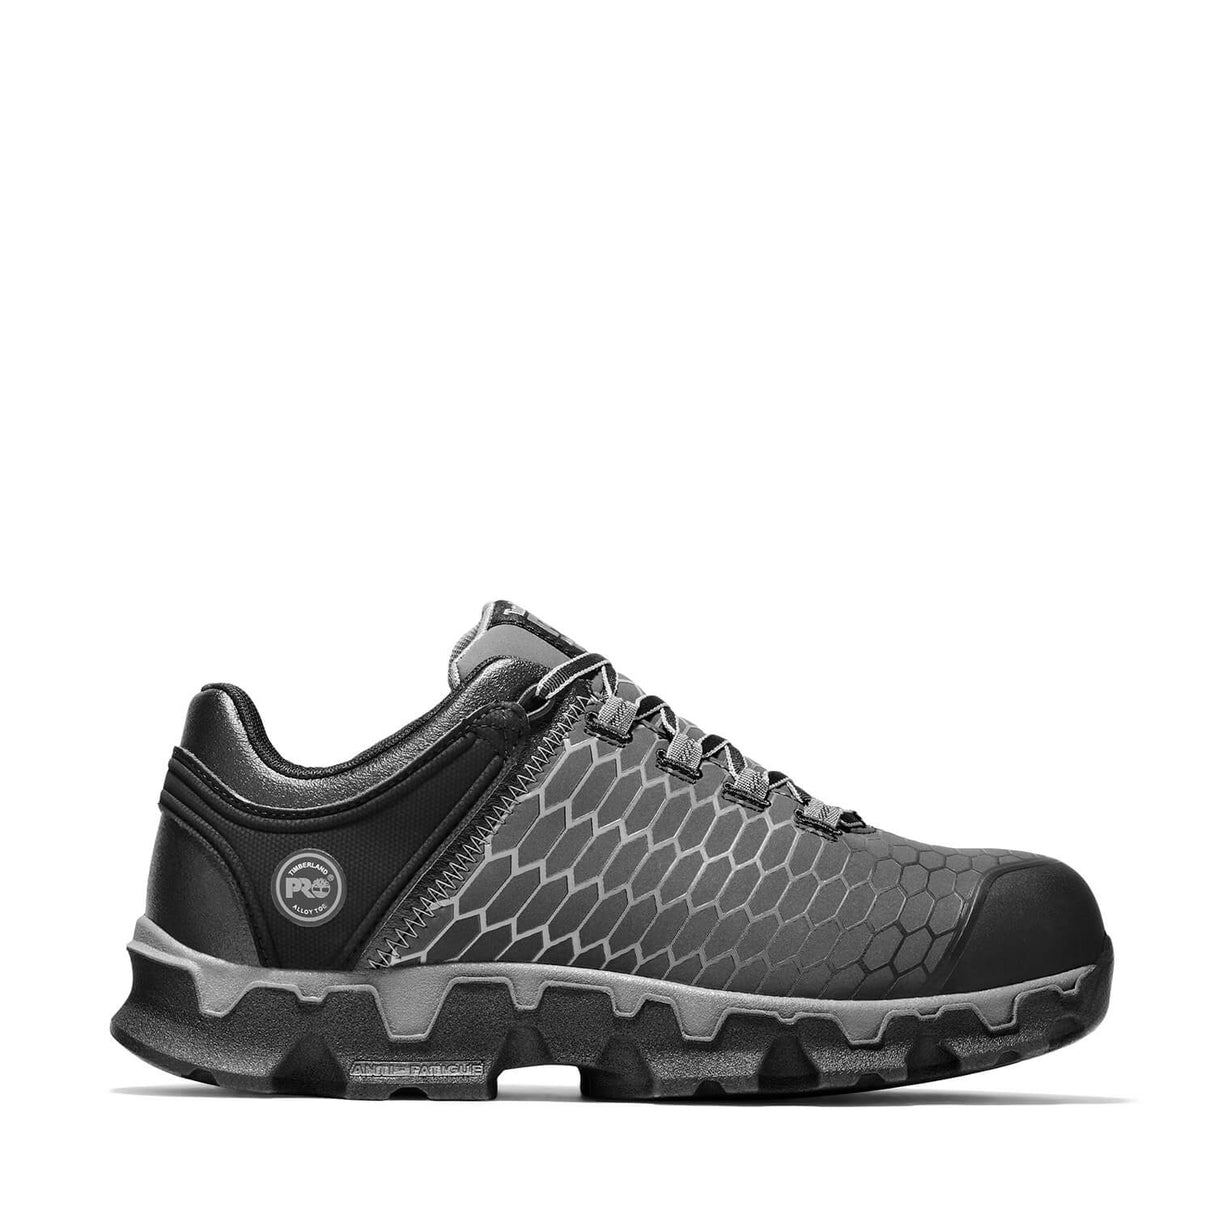 Timberland PRO-Powertrain Sport Men's Alloy-Toe Shoe Black/Grey-Steel Toes-6